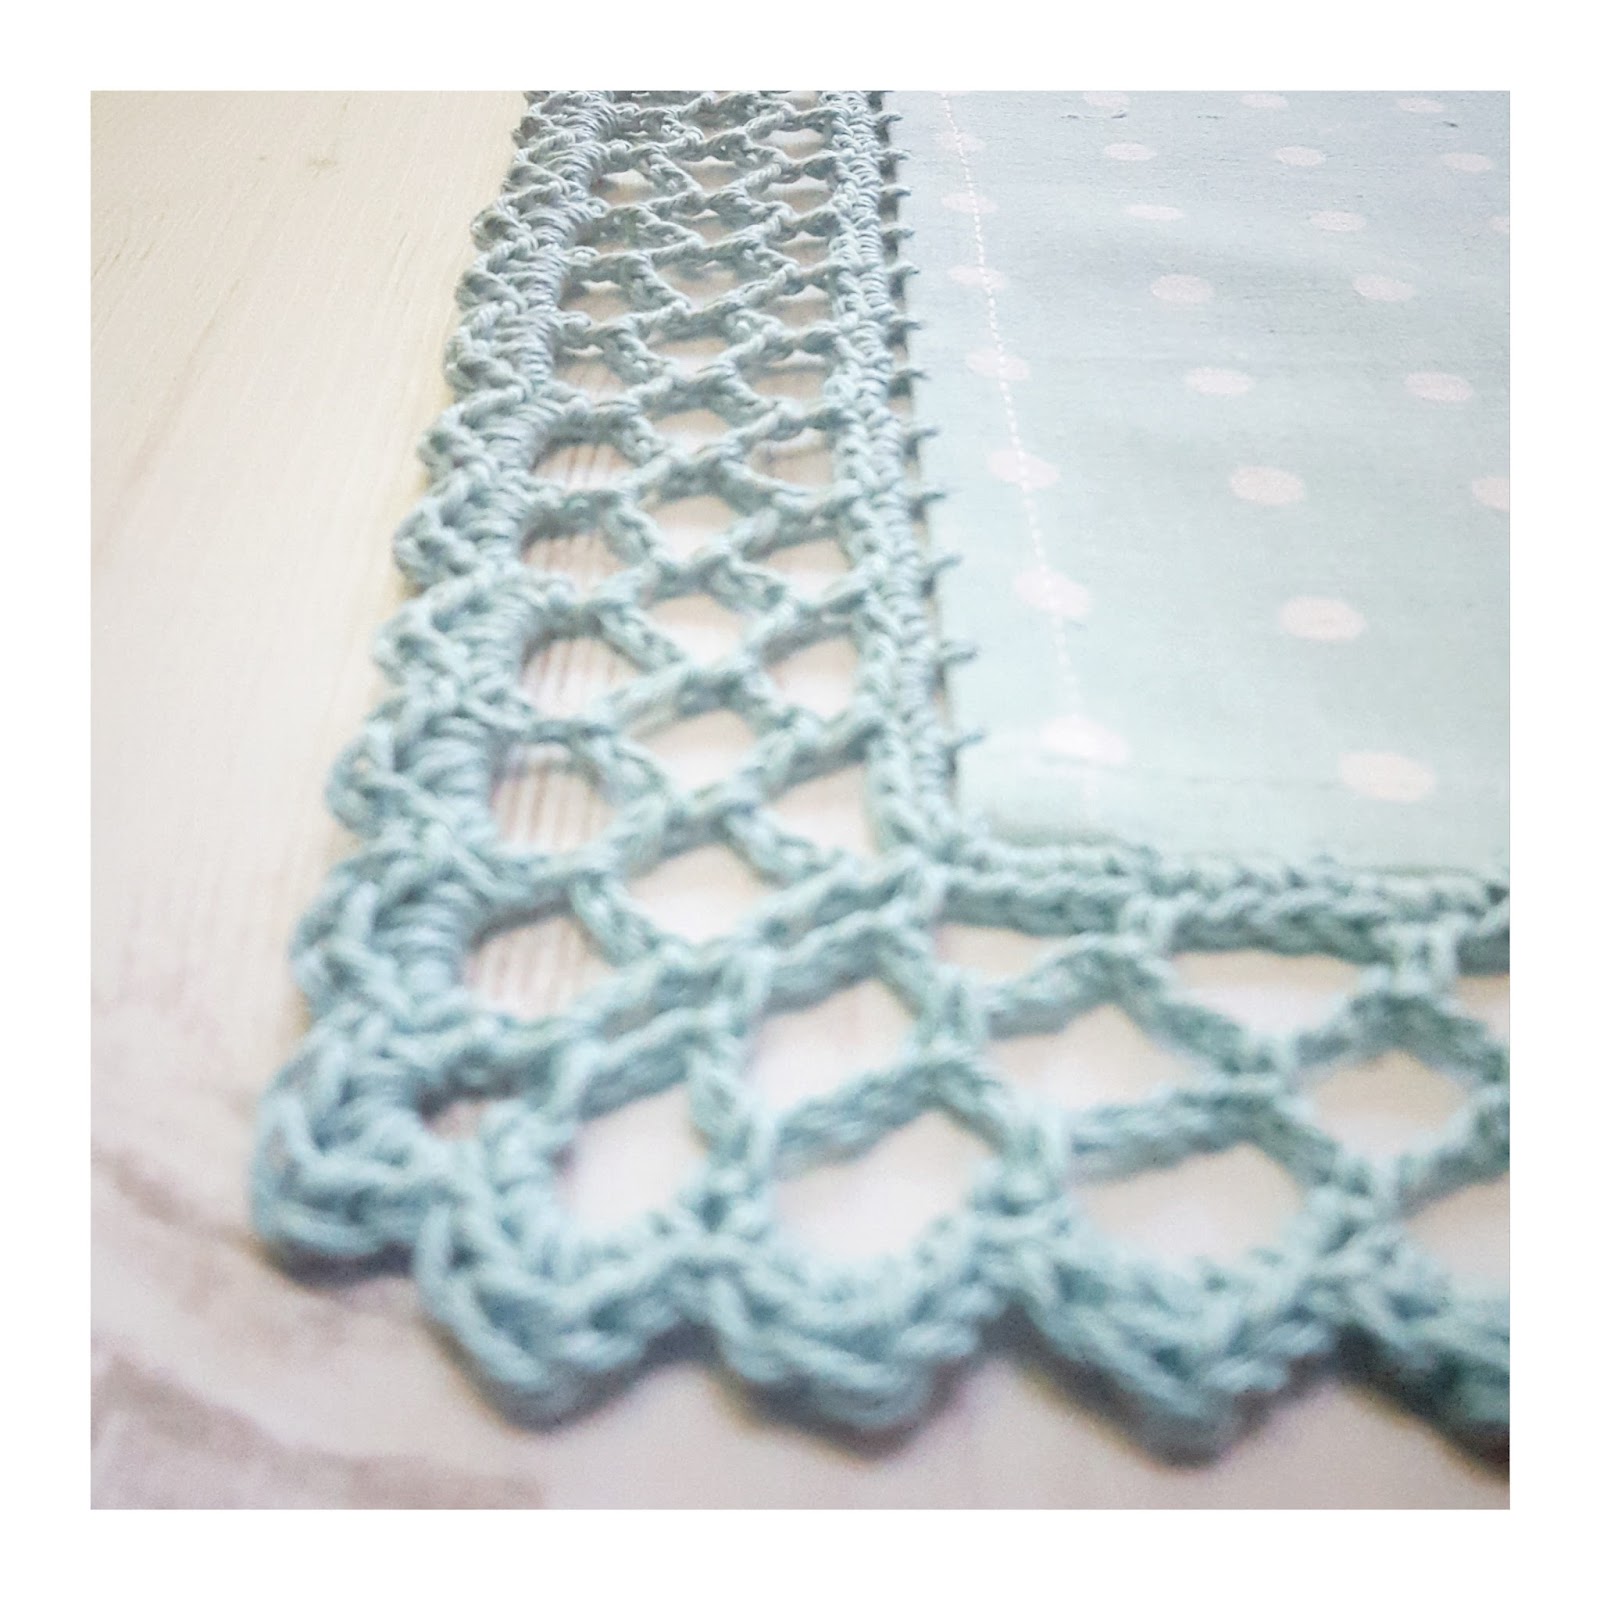 Crochet Tea Party: Tea Towel Edging